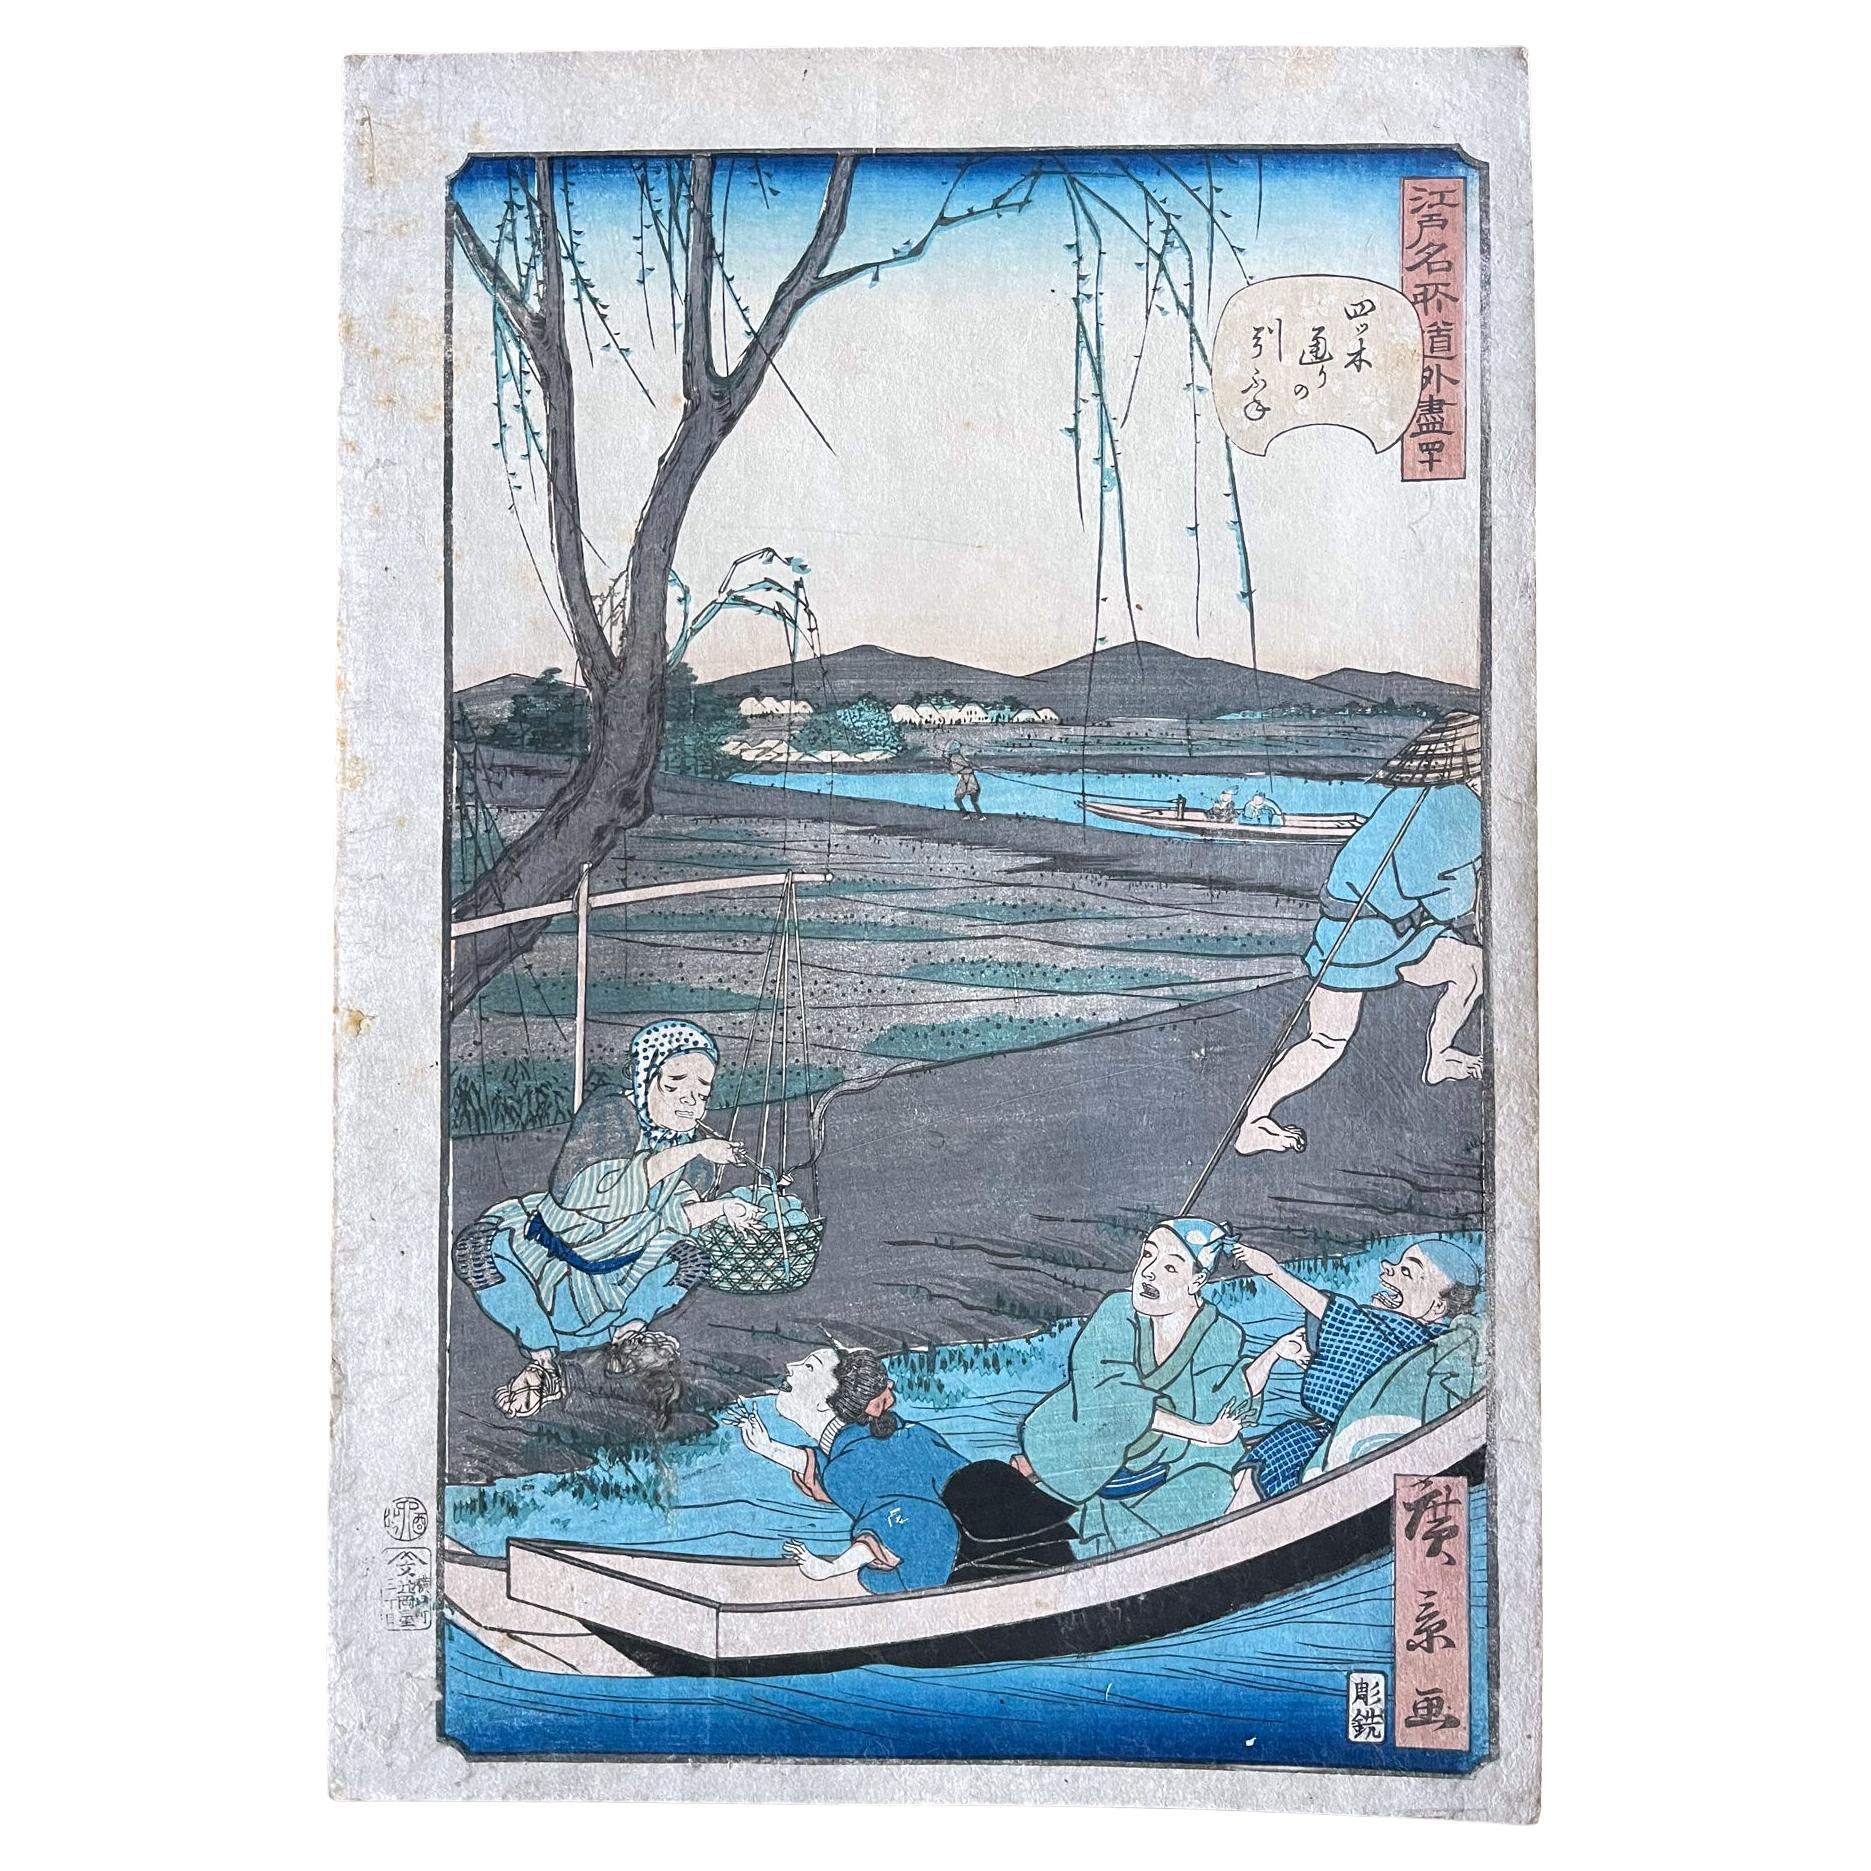 Impression sur bois - Vues comiques de lieux célèbres à Edo par Hiroshige Hirokage